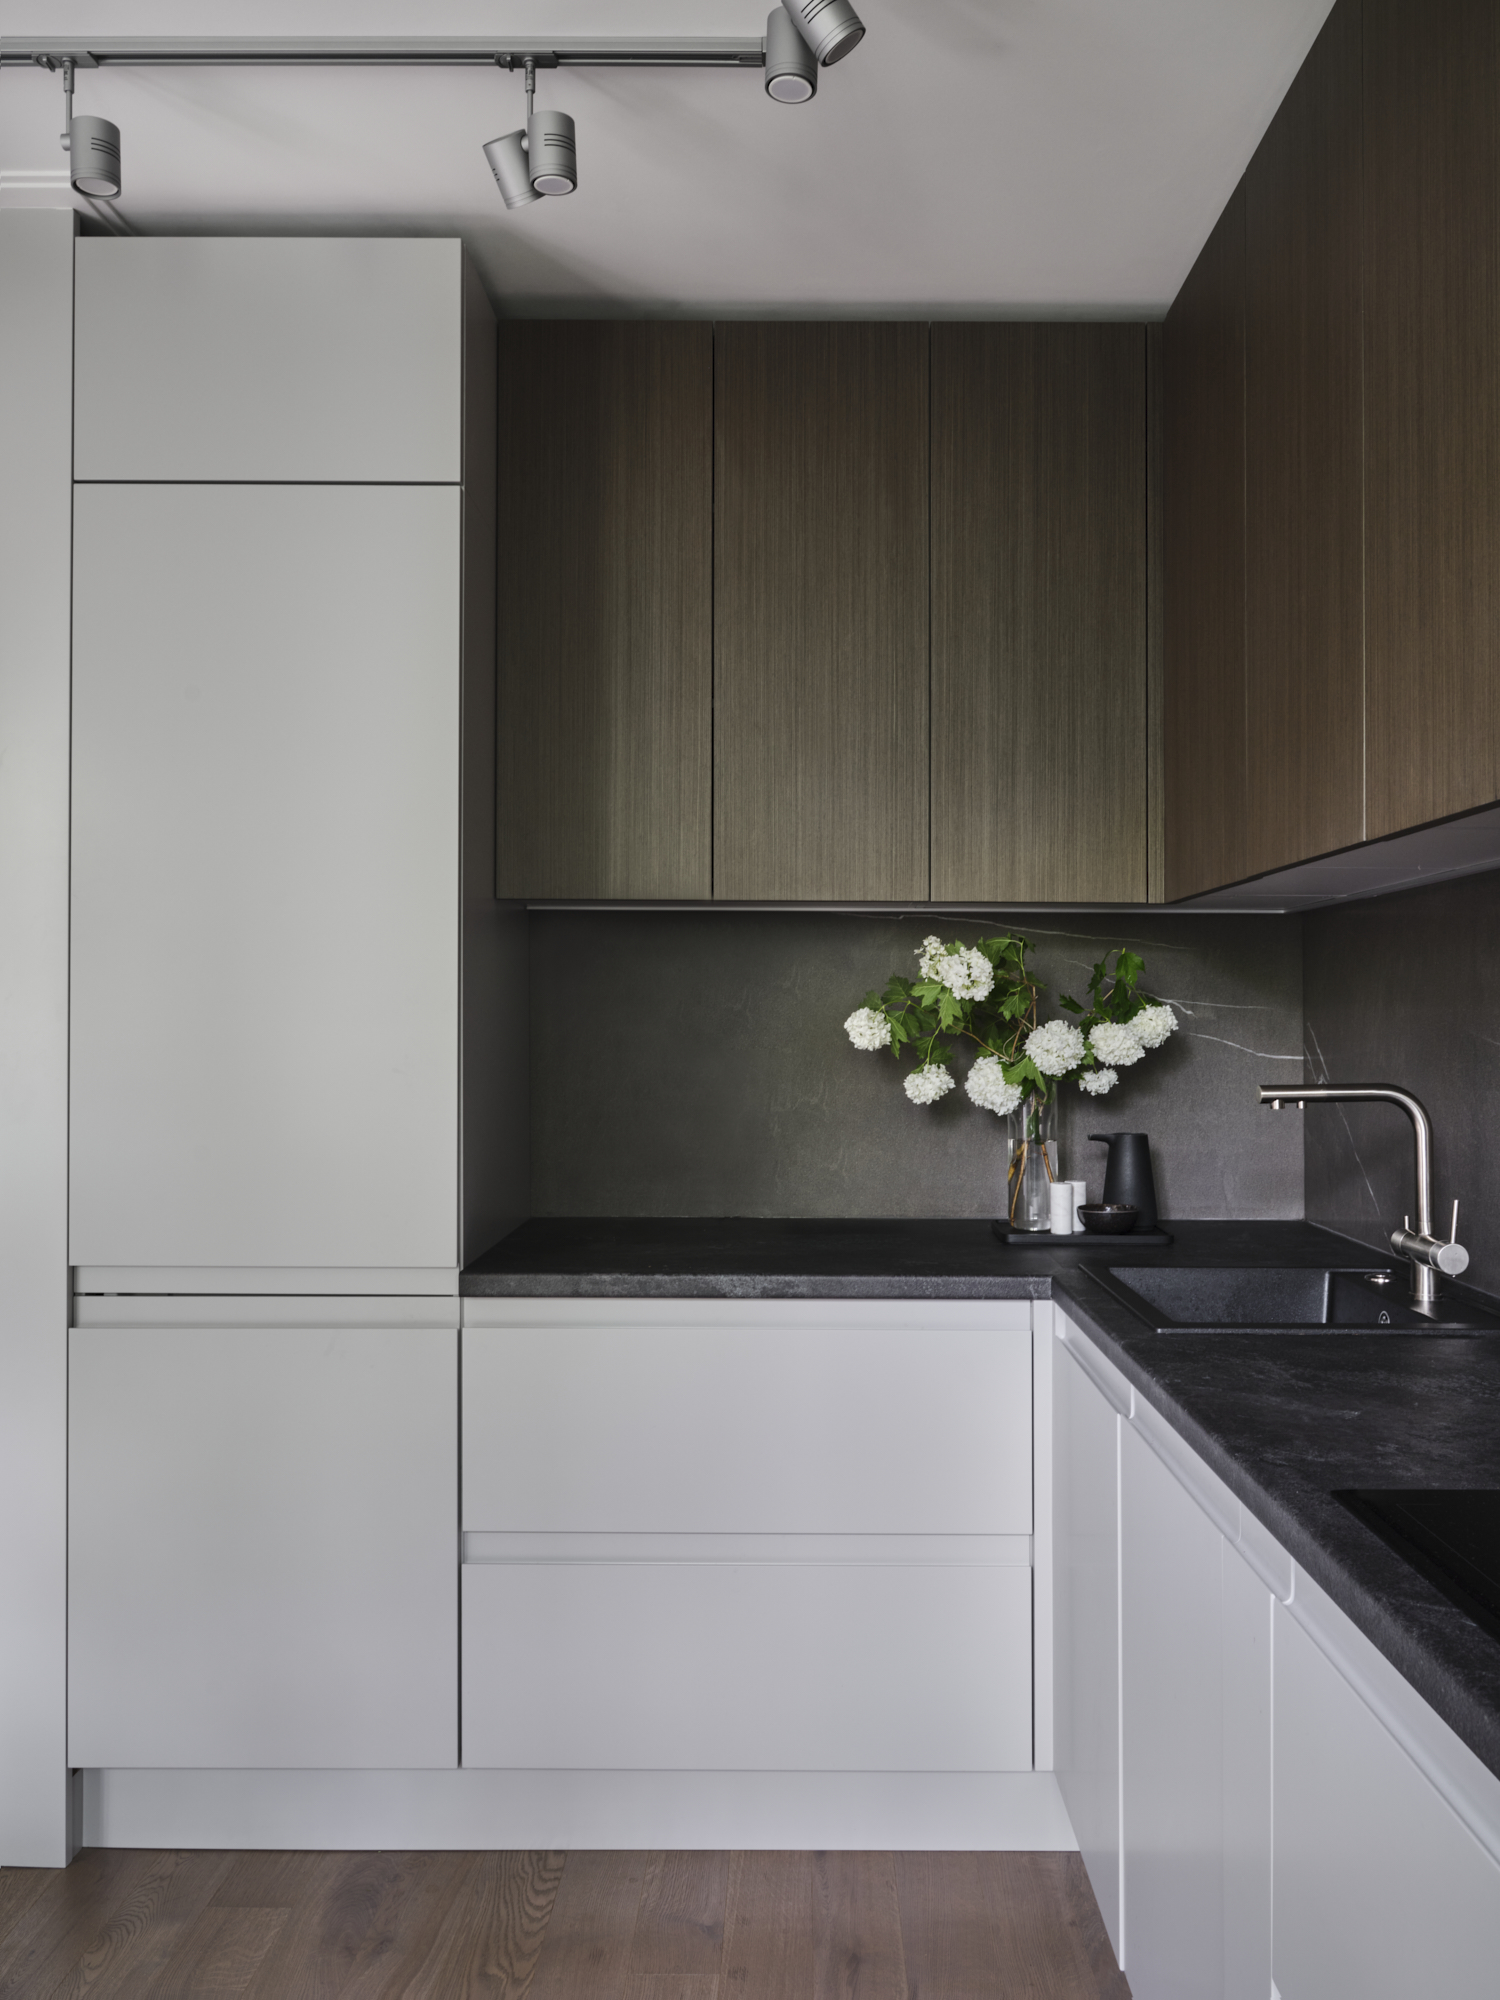 Phòng bếp thiết kế kiểu chữ L phù hợp với cấu trúc căn hộ nhỏ, thêm vào đó là sự tương phản của hệ tủ bếp màu gỗ trầm ấm và hệ tủ dưới sắc trắng thanh lịch, sạch sẽ càng thêm bắt mắt.